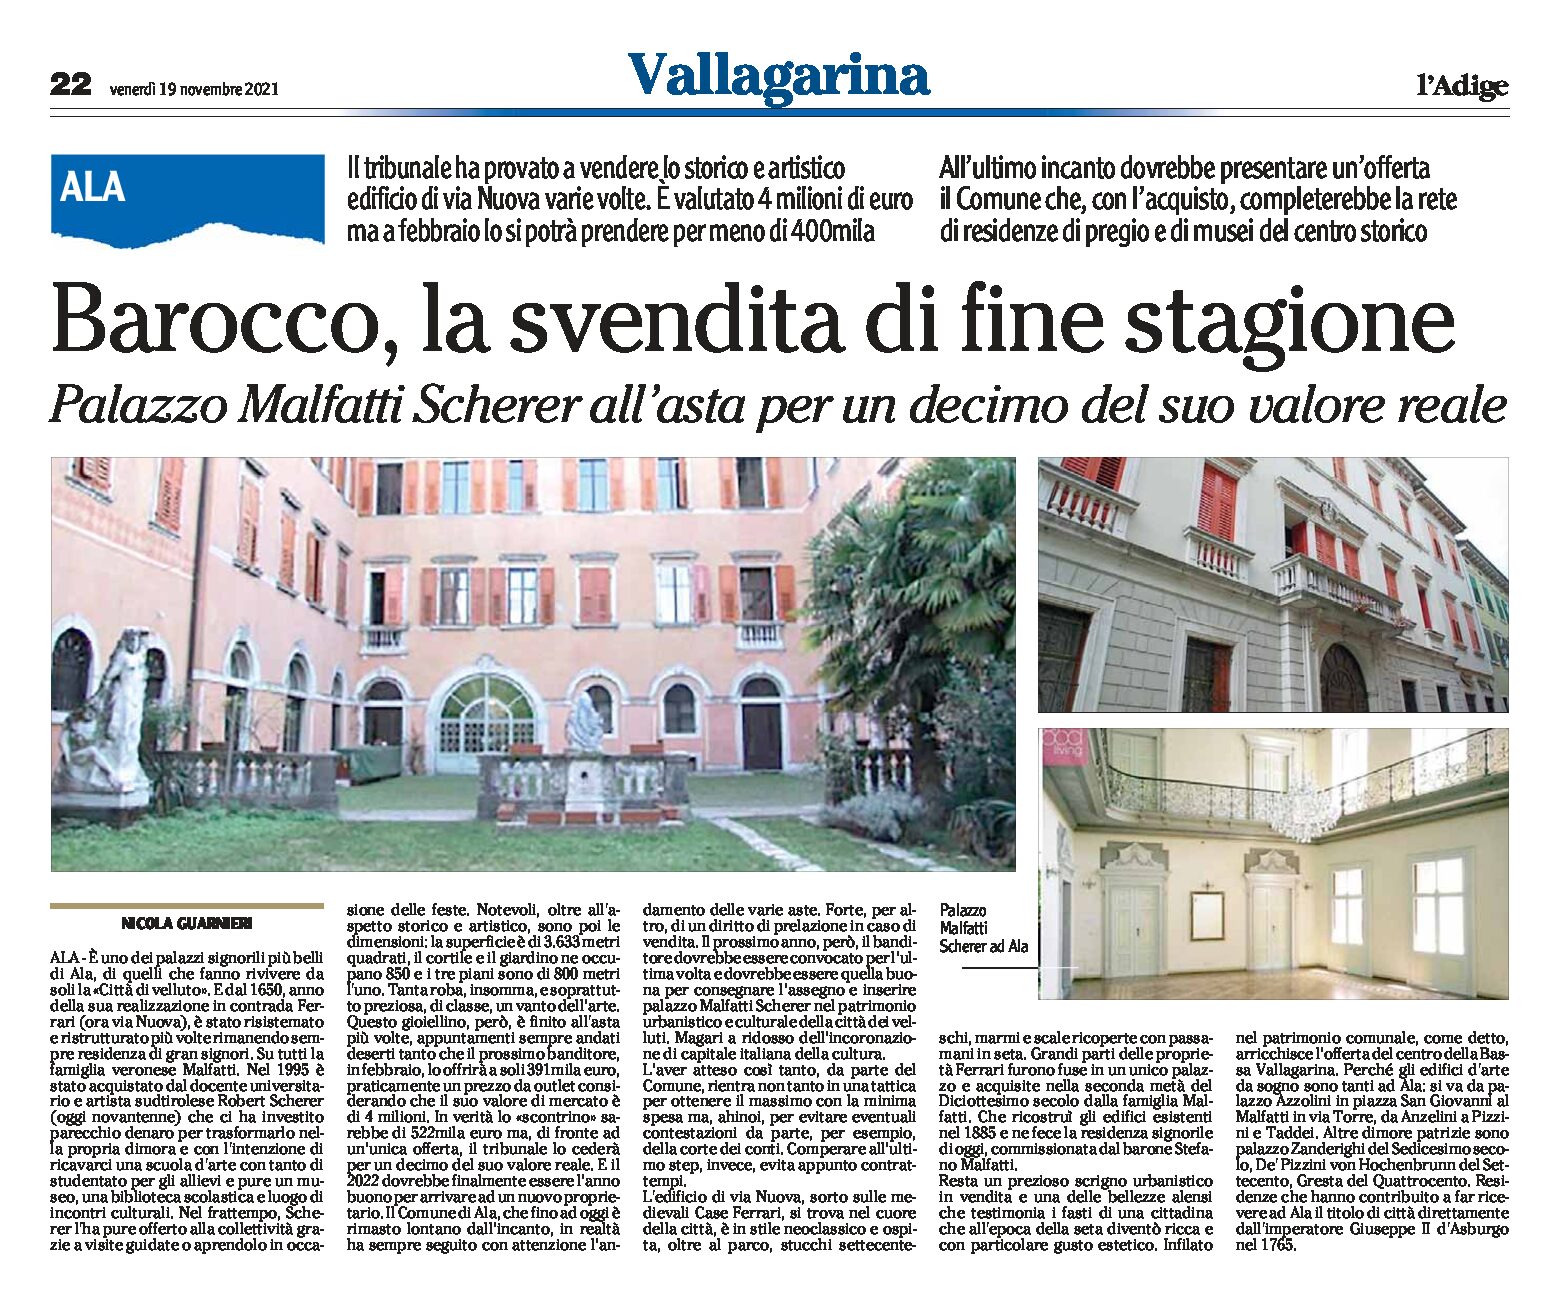 Ala: Palazzo Malfatti Scherer all’asta per un decimo del suo valore reale